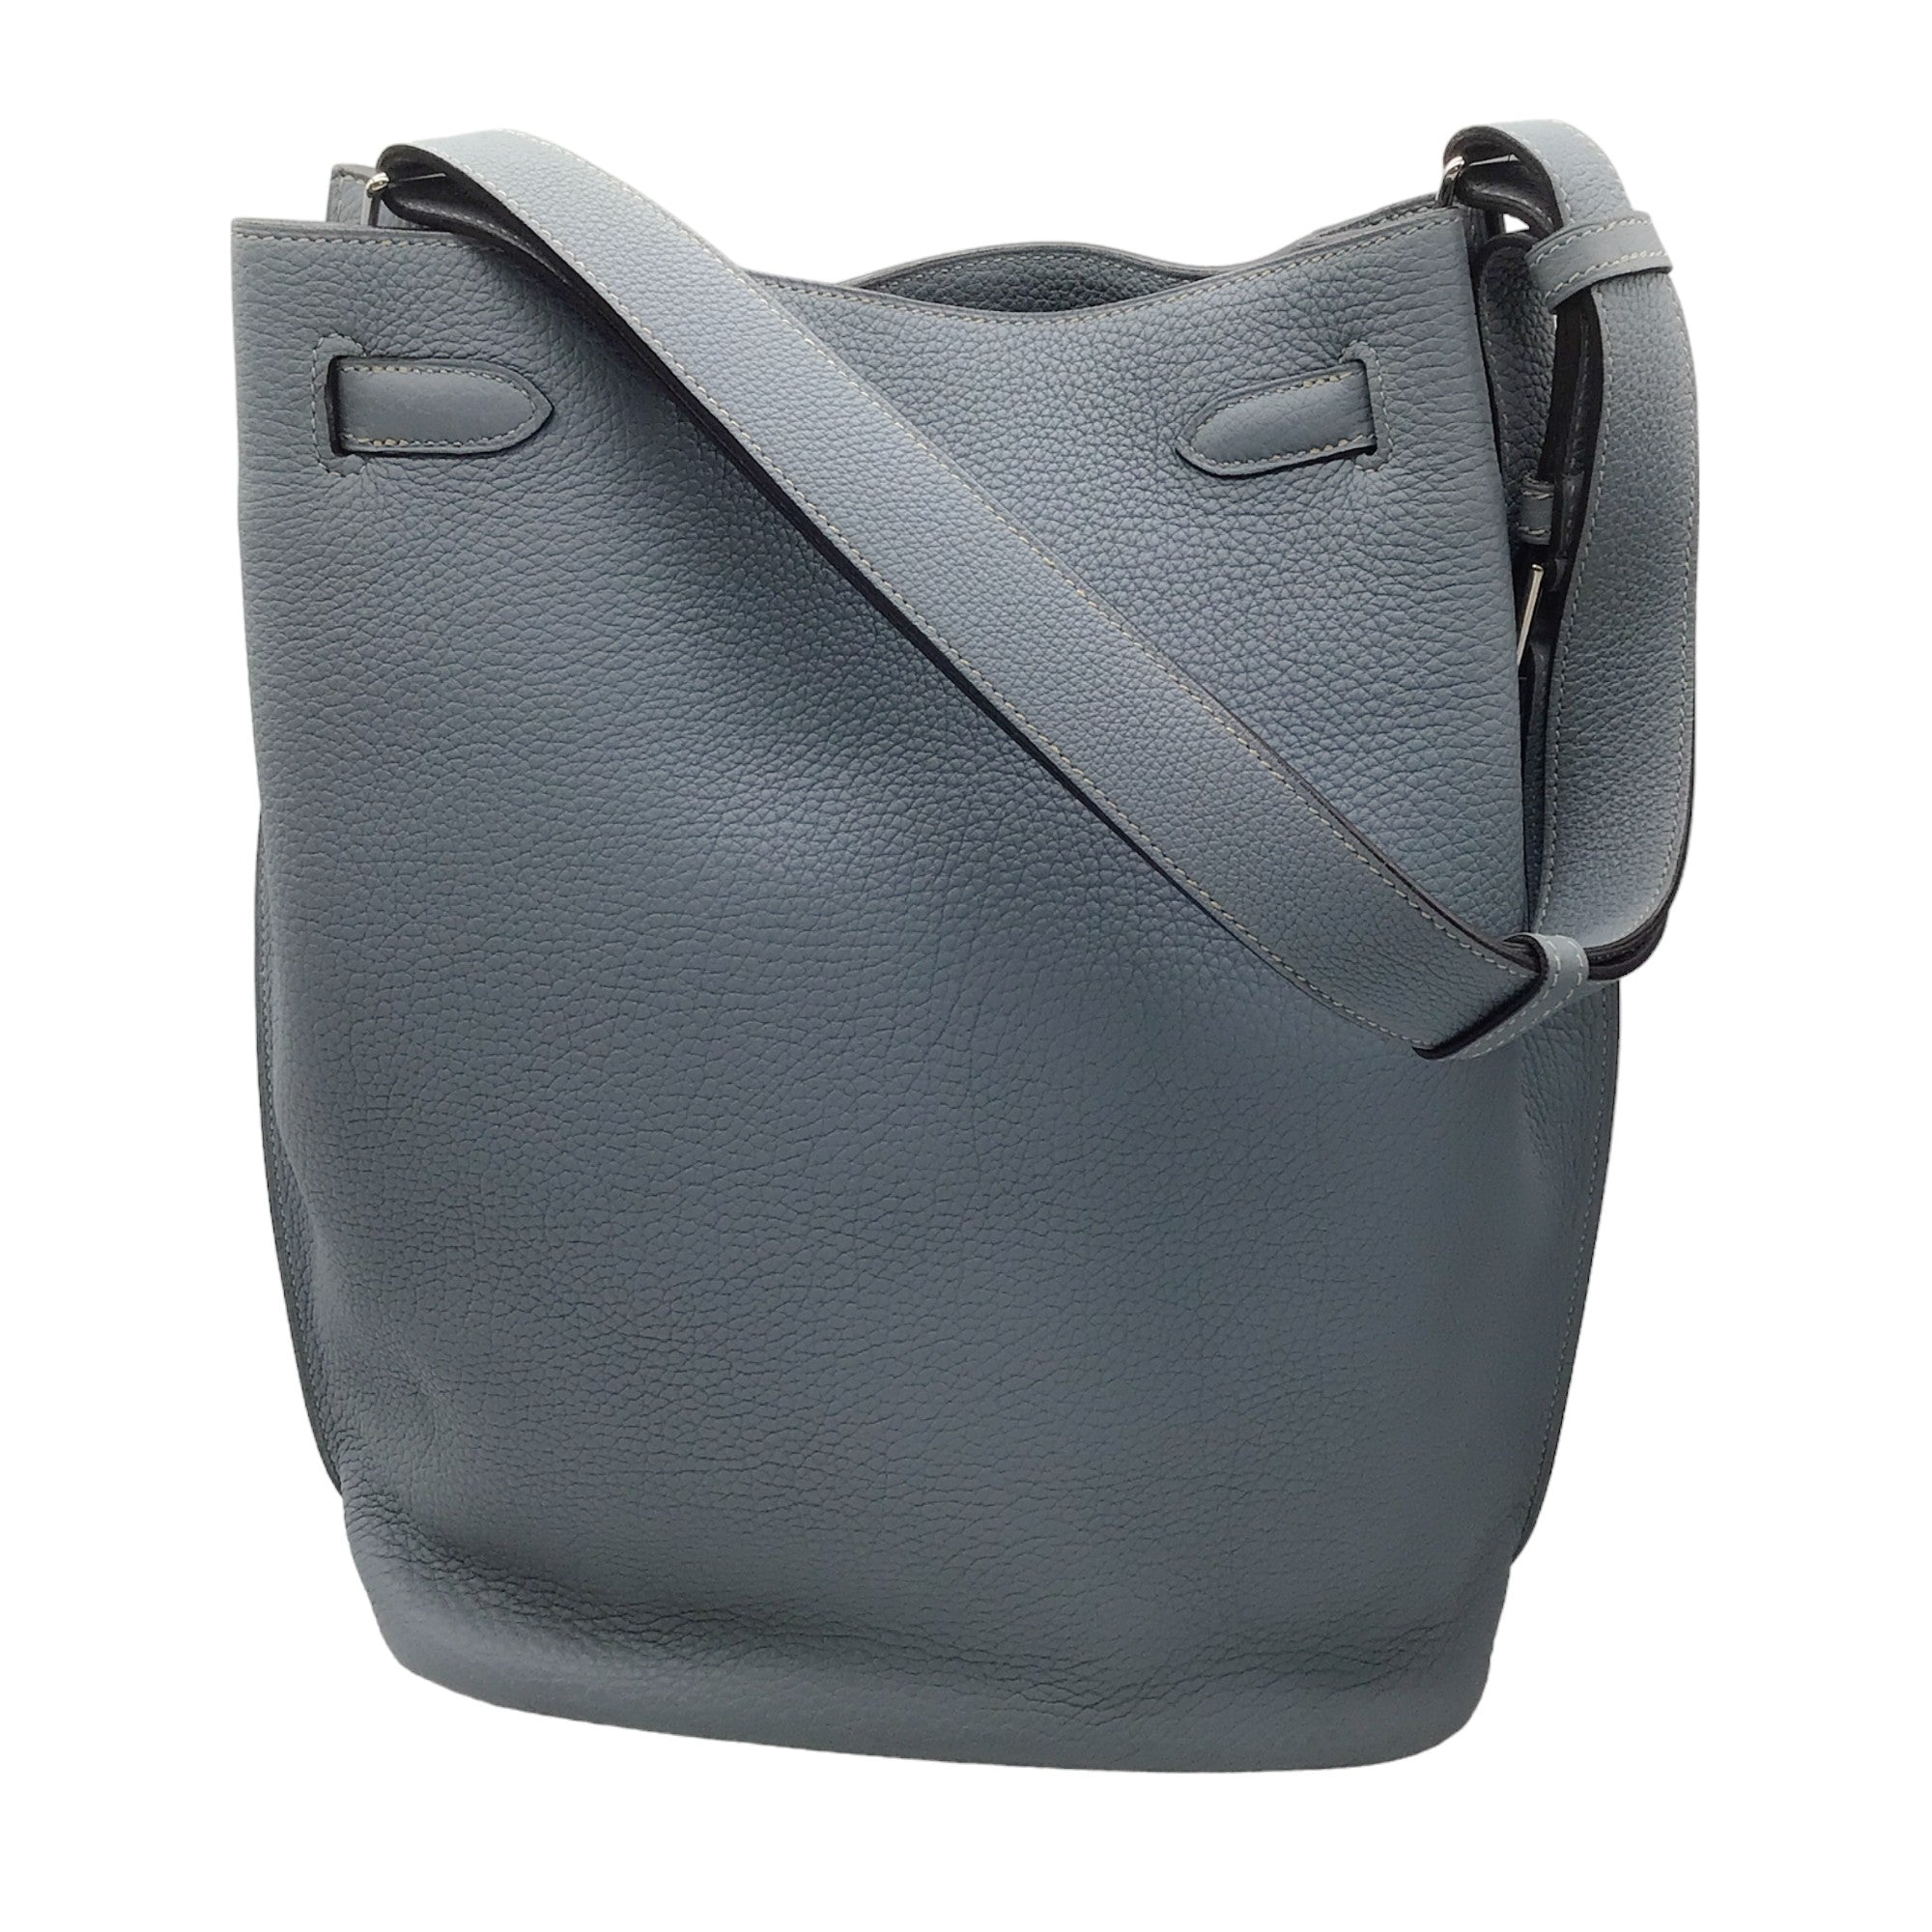 Hermes Light Blue 2013 Clemence Leather So Kelly 26 Handbag